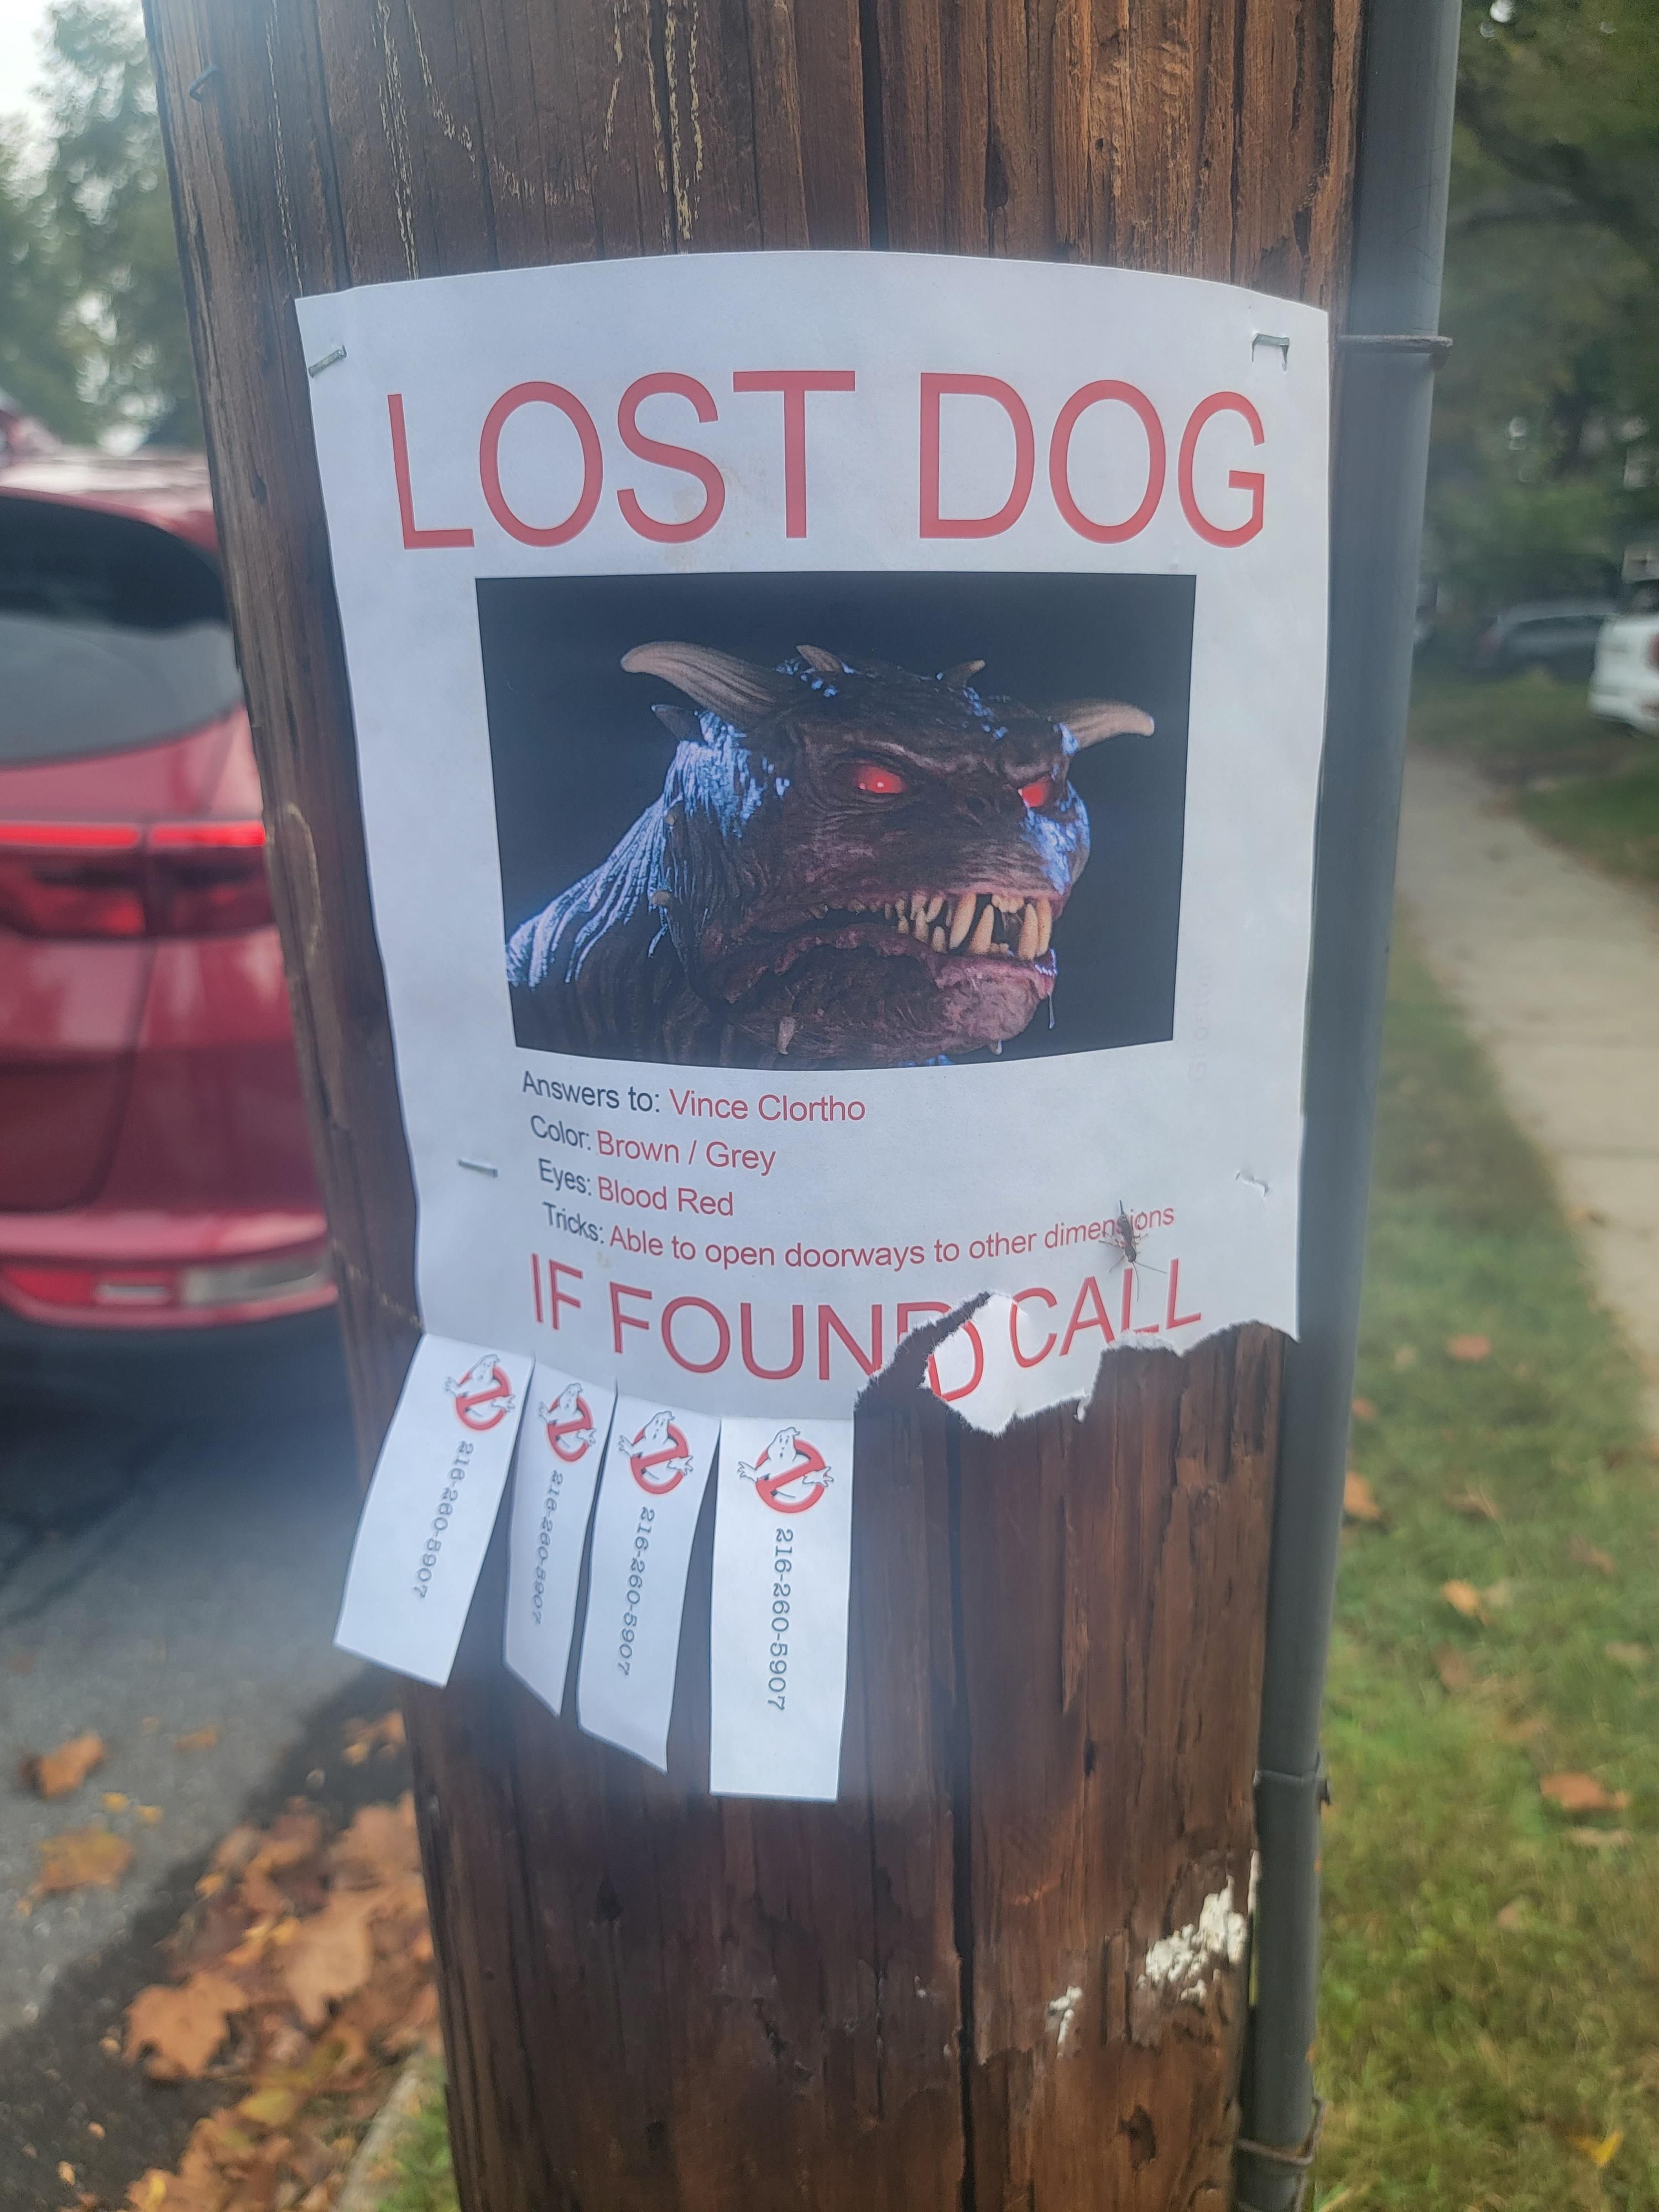 Missing dog in NJ